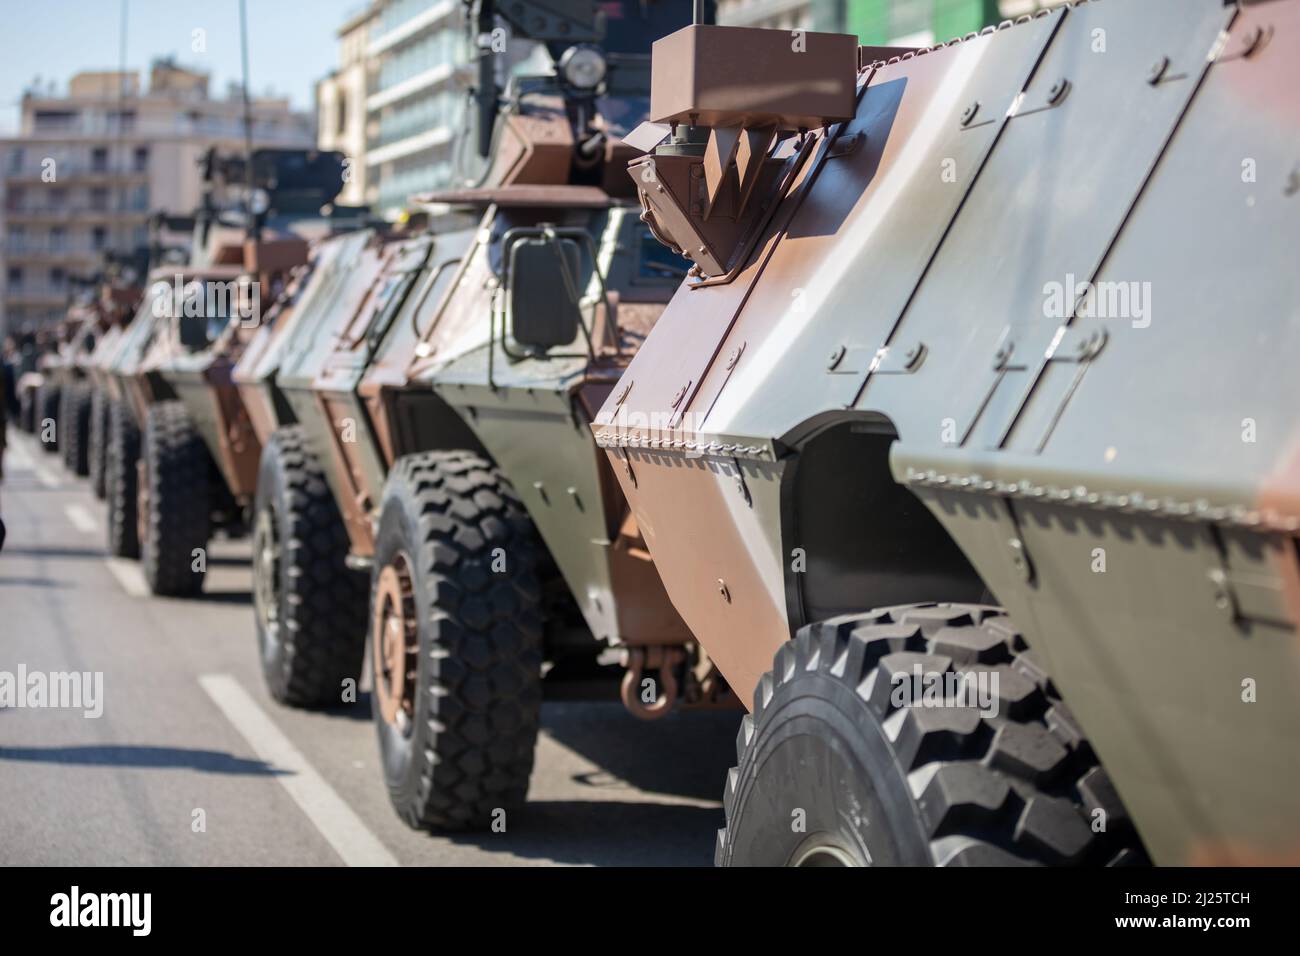 M1117 véhicule de sécurité blindé du gardien ASV, défilé militaire. Arme de guerre, véhicule couleur camouflage, vue rapprochée. Machine militaire Banque D'Images